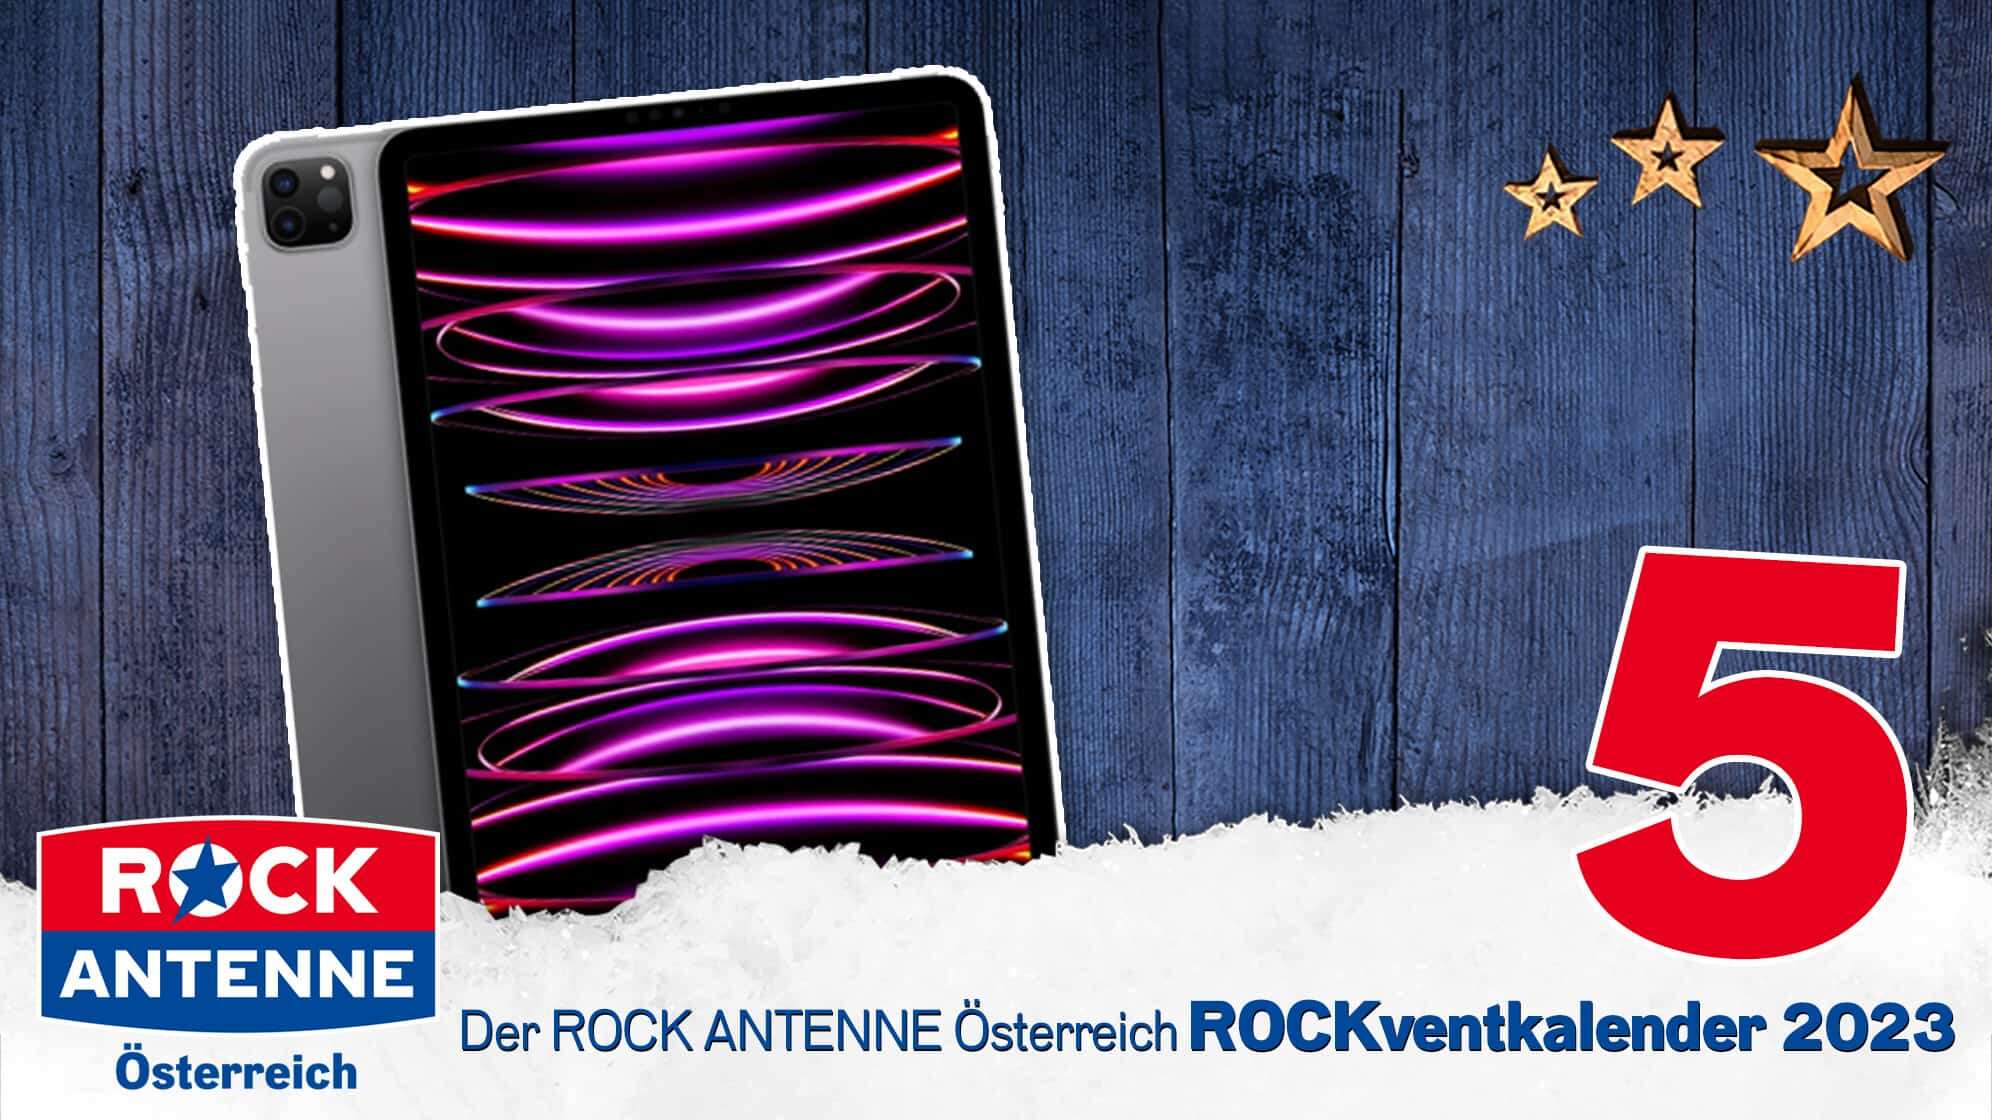 ROCK ANTENNE Österreich Rockventkalender Türchen 5: Ein iPad Pro 11